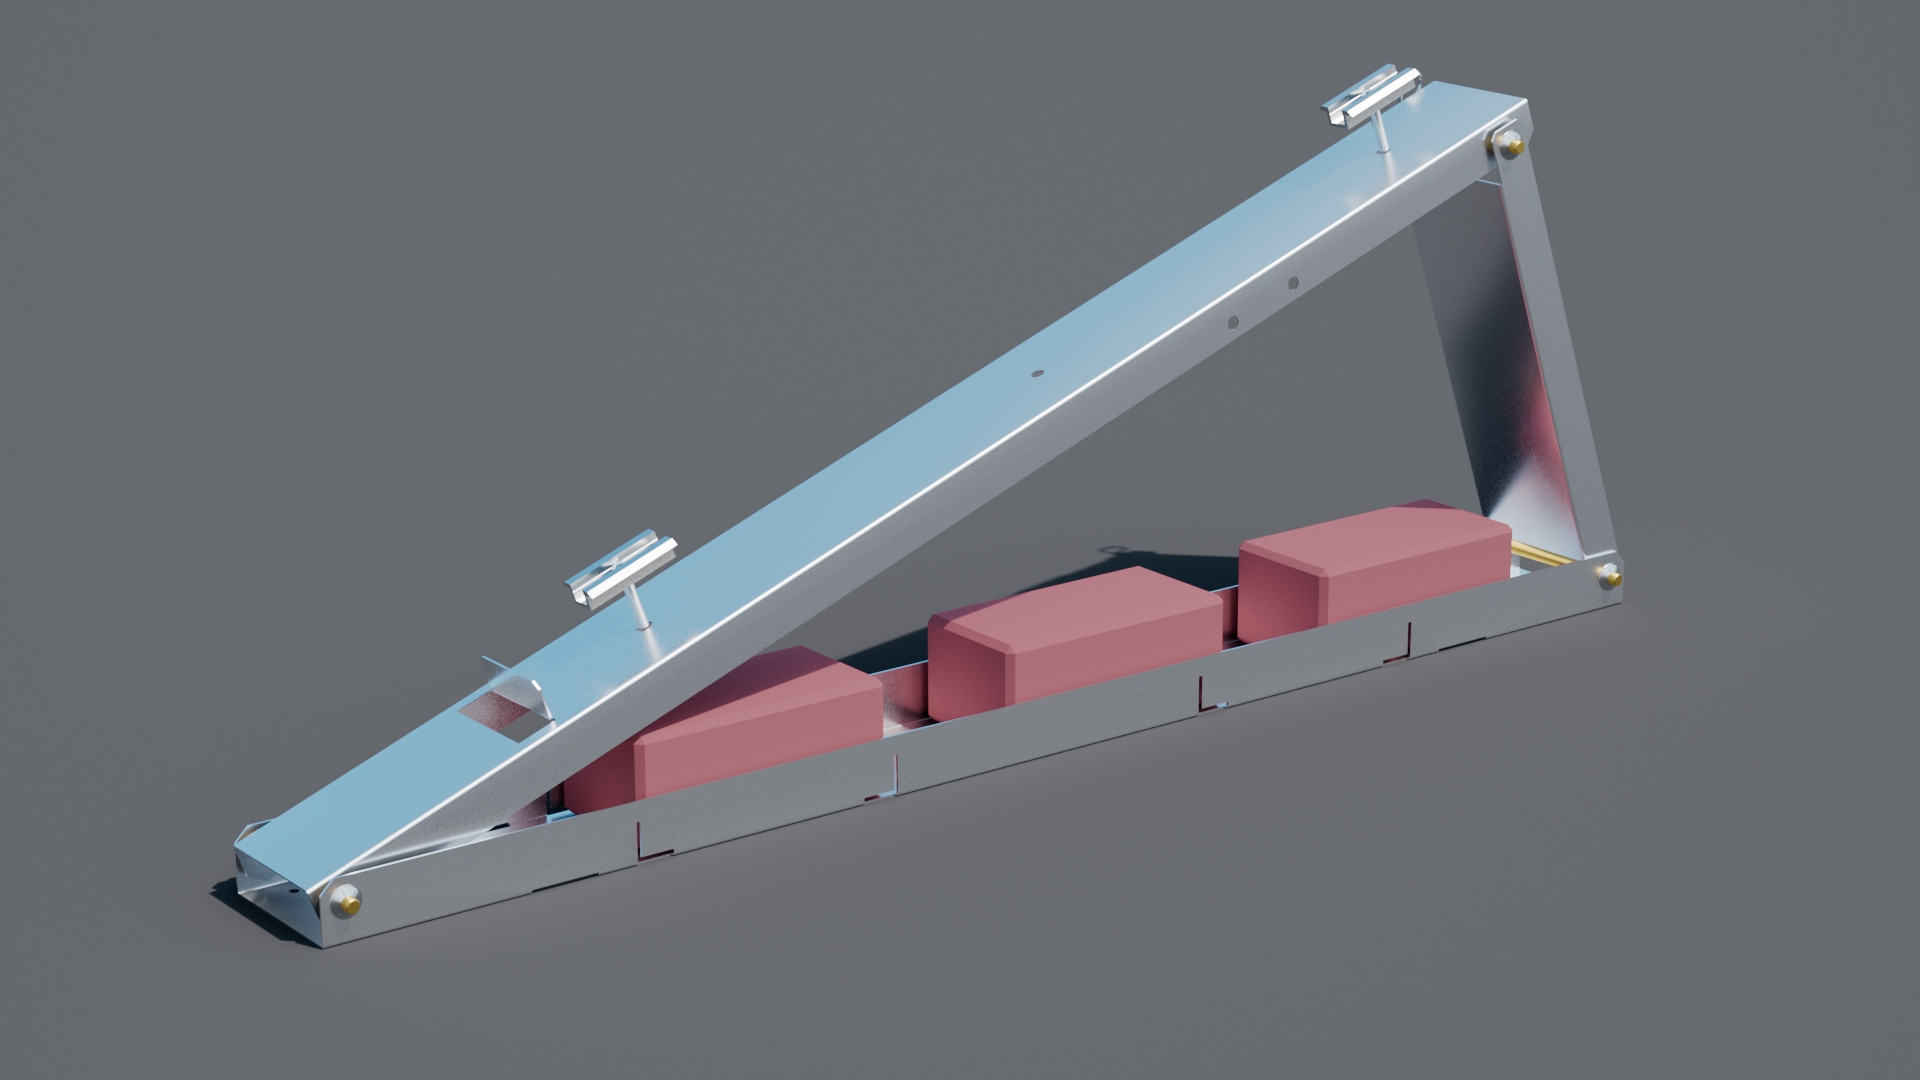 Balkonkraftwerk-Aufständerung — Flachdach  für 2 x PV-Module (hintereinander)